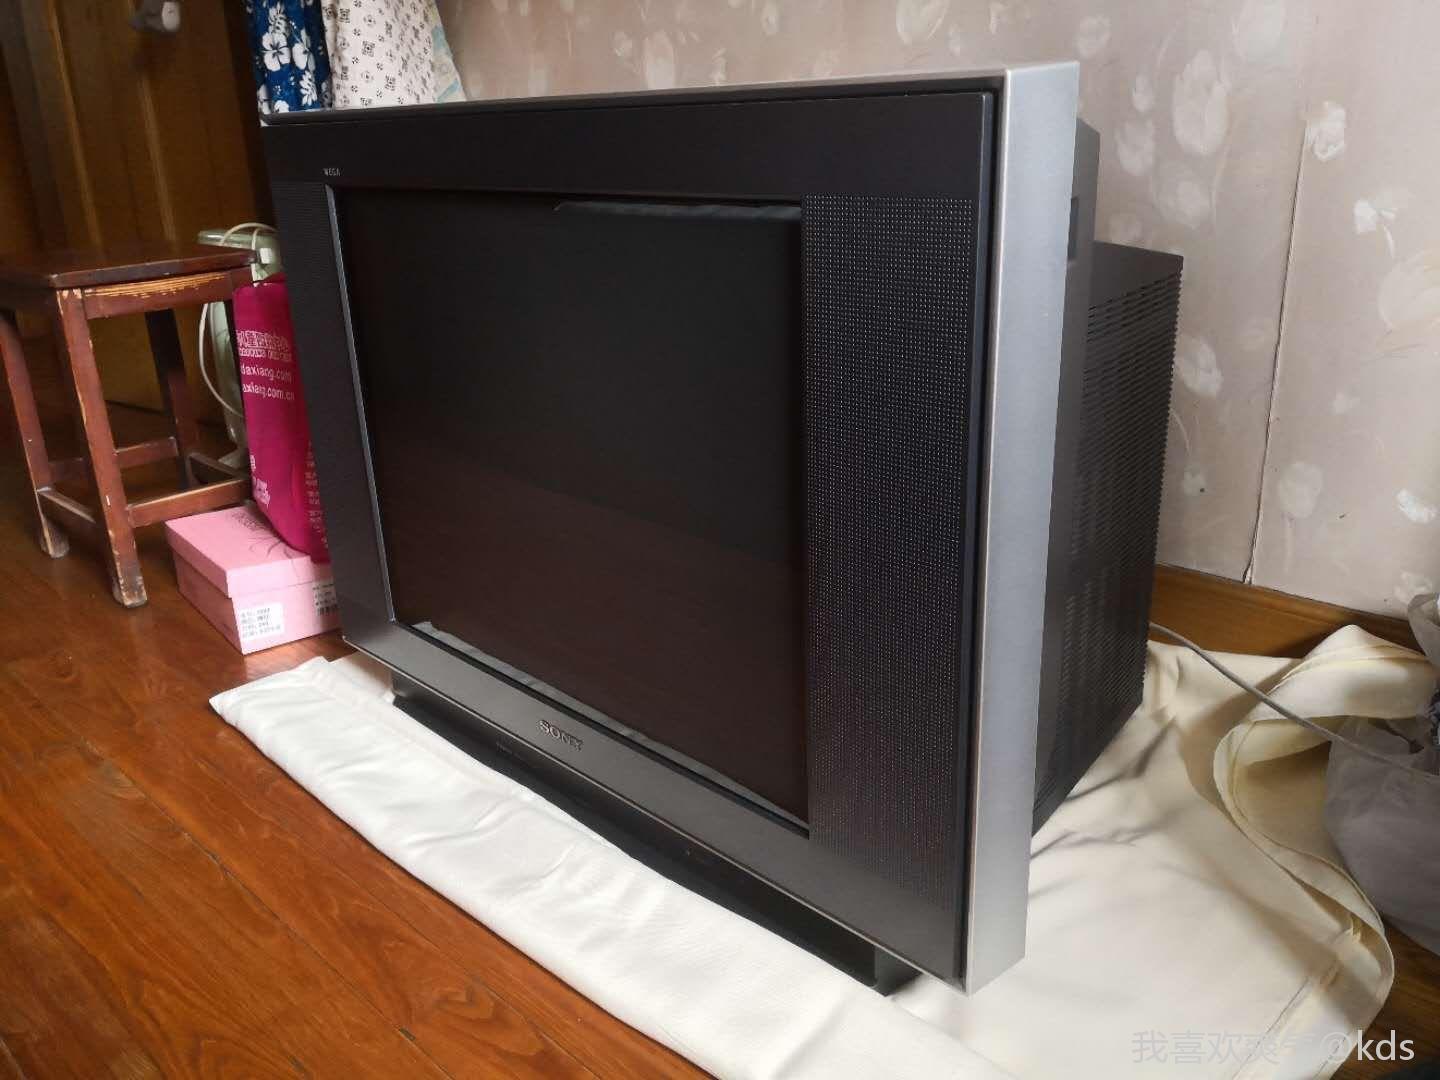 索尼29寸老式电视机图片